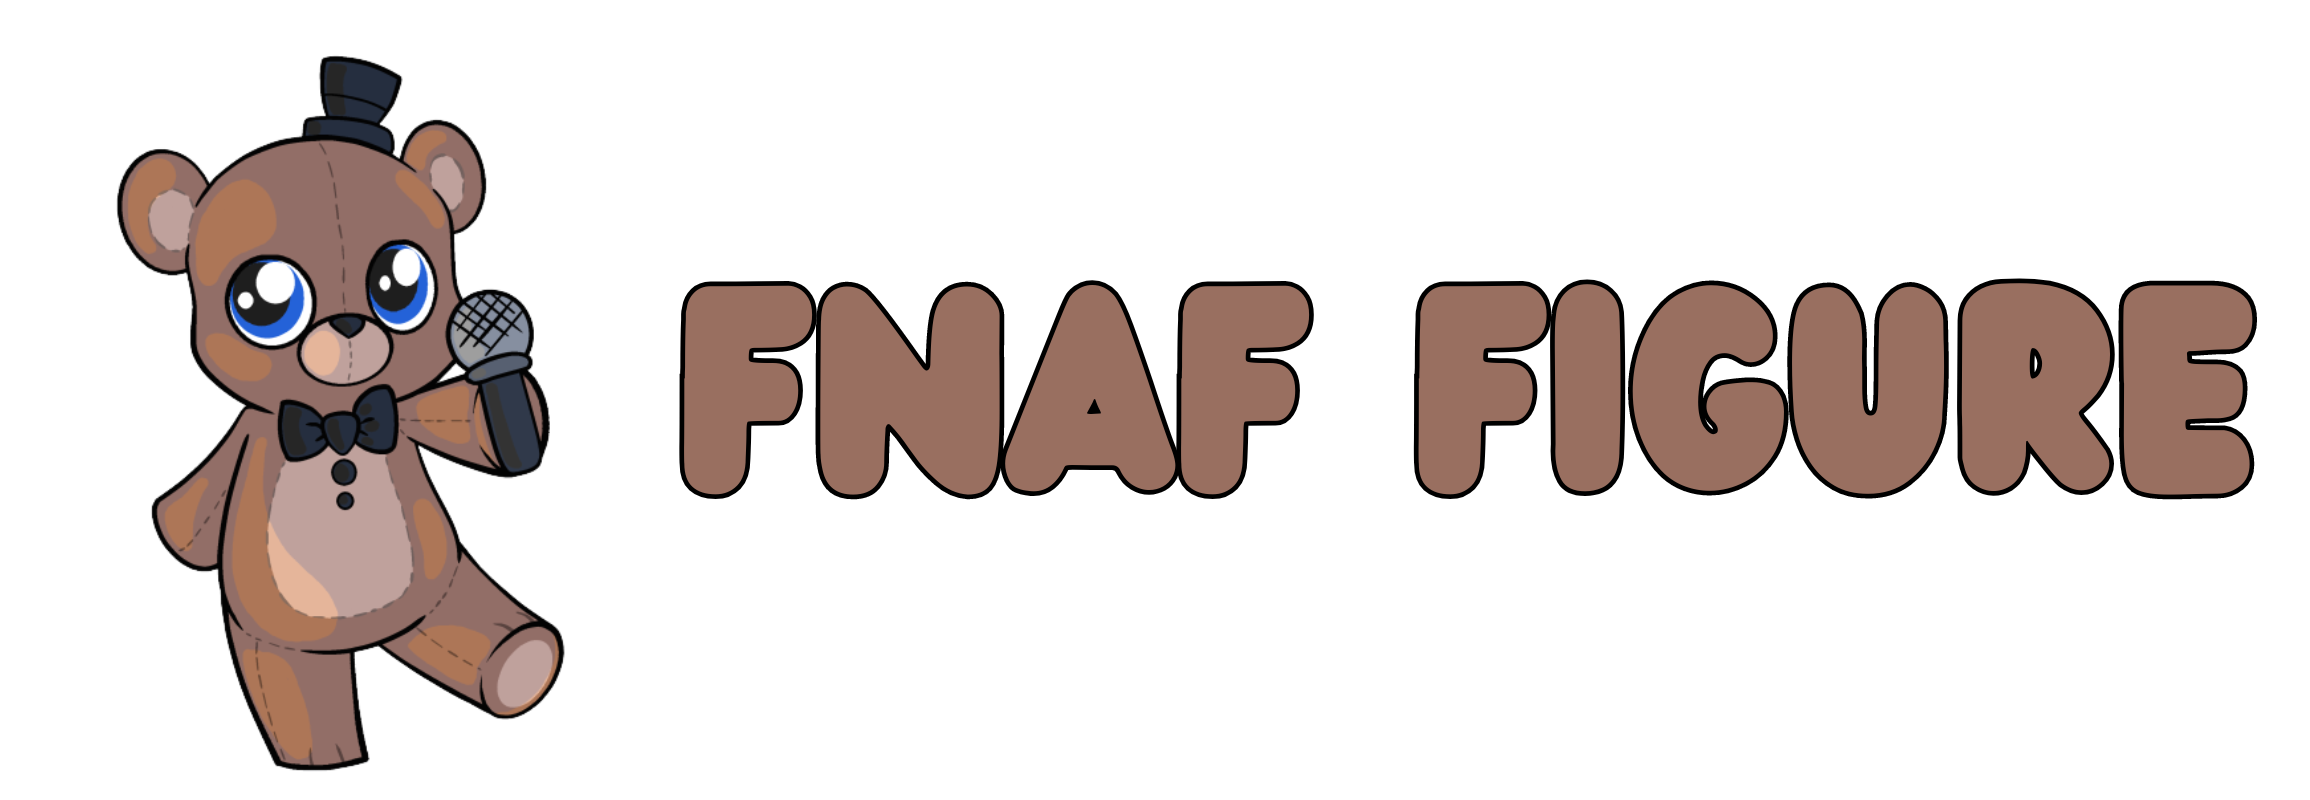 FNAF Figure logo1 - FNAF Figure